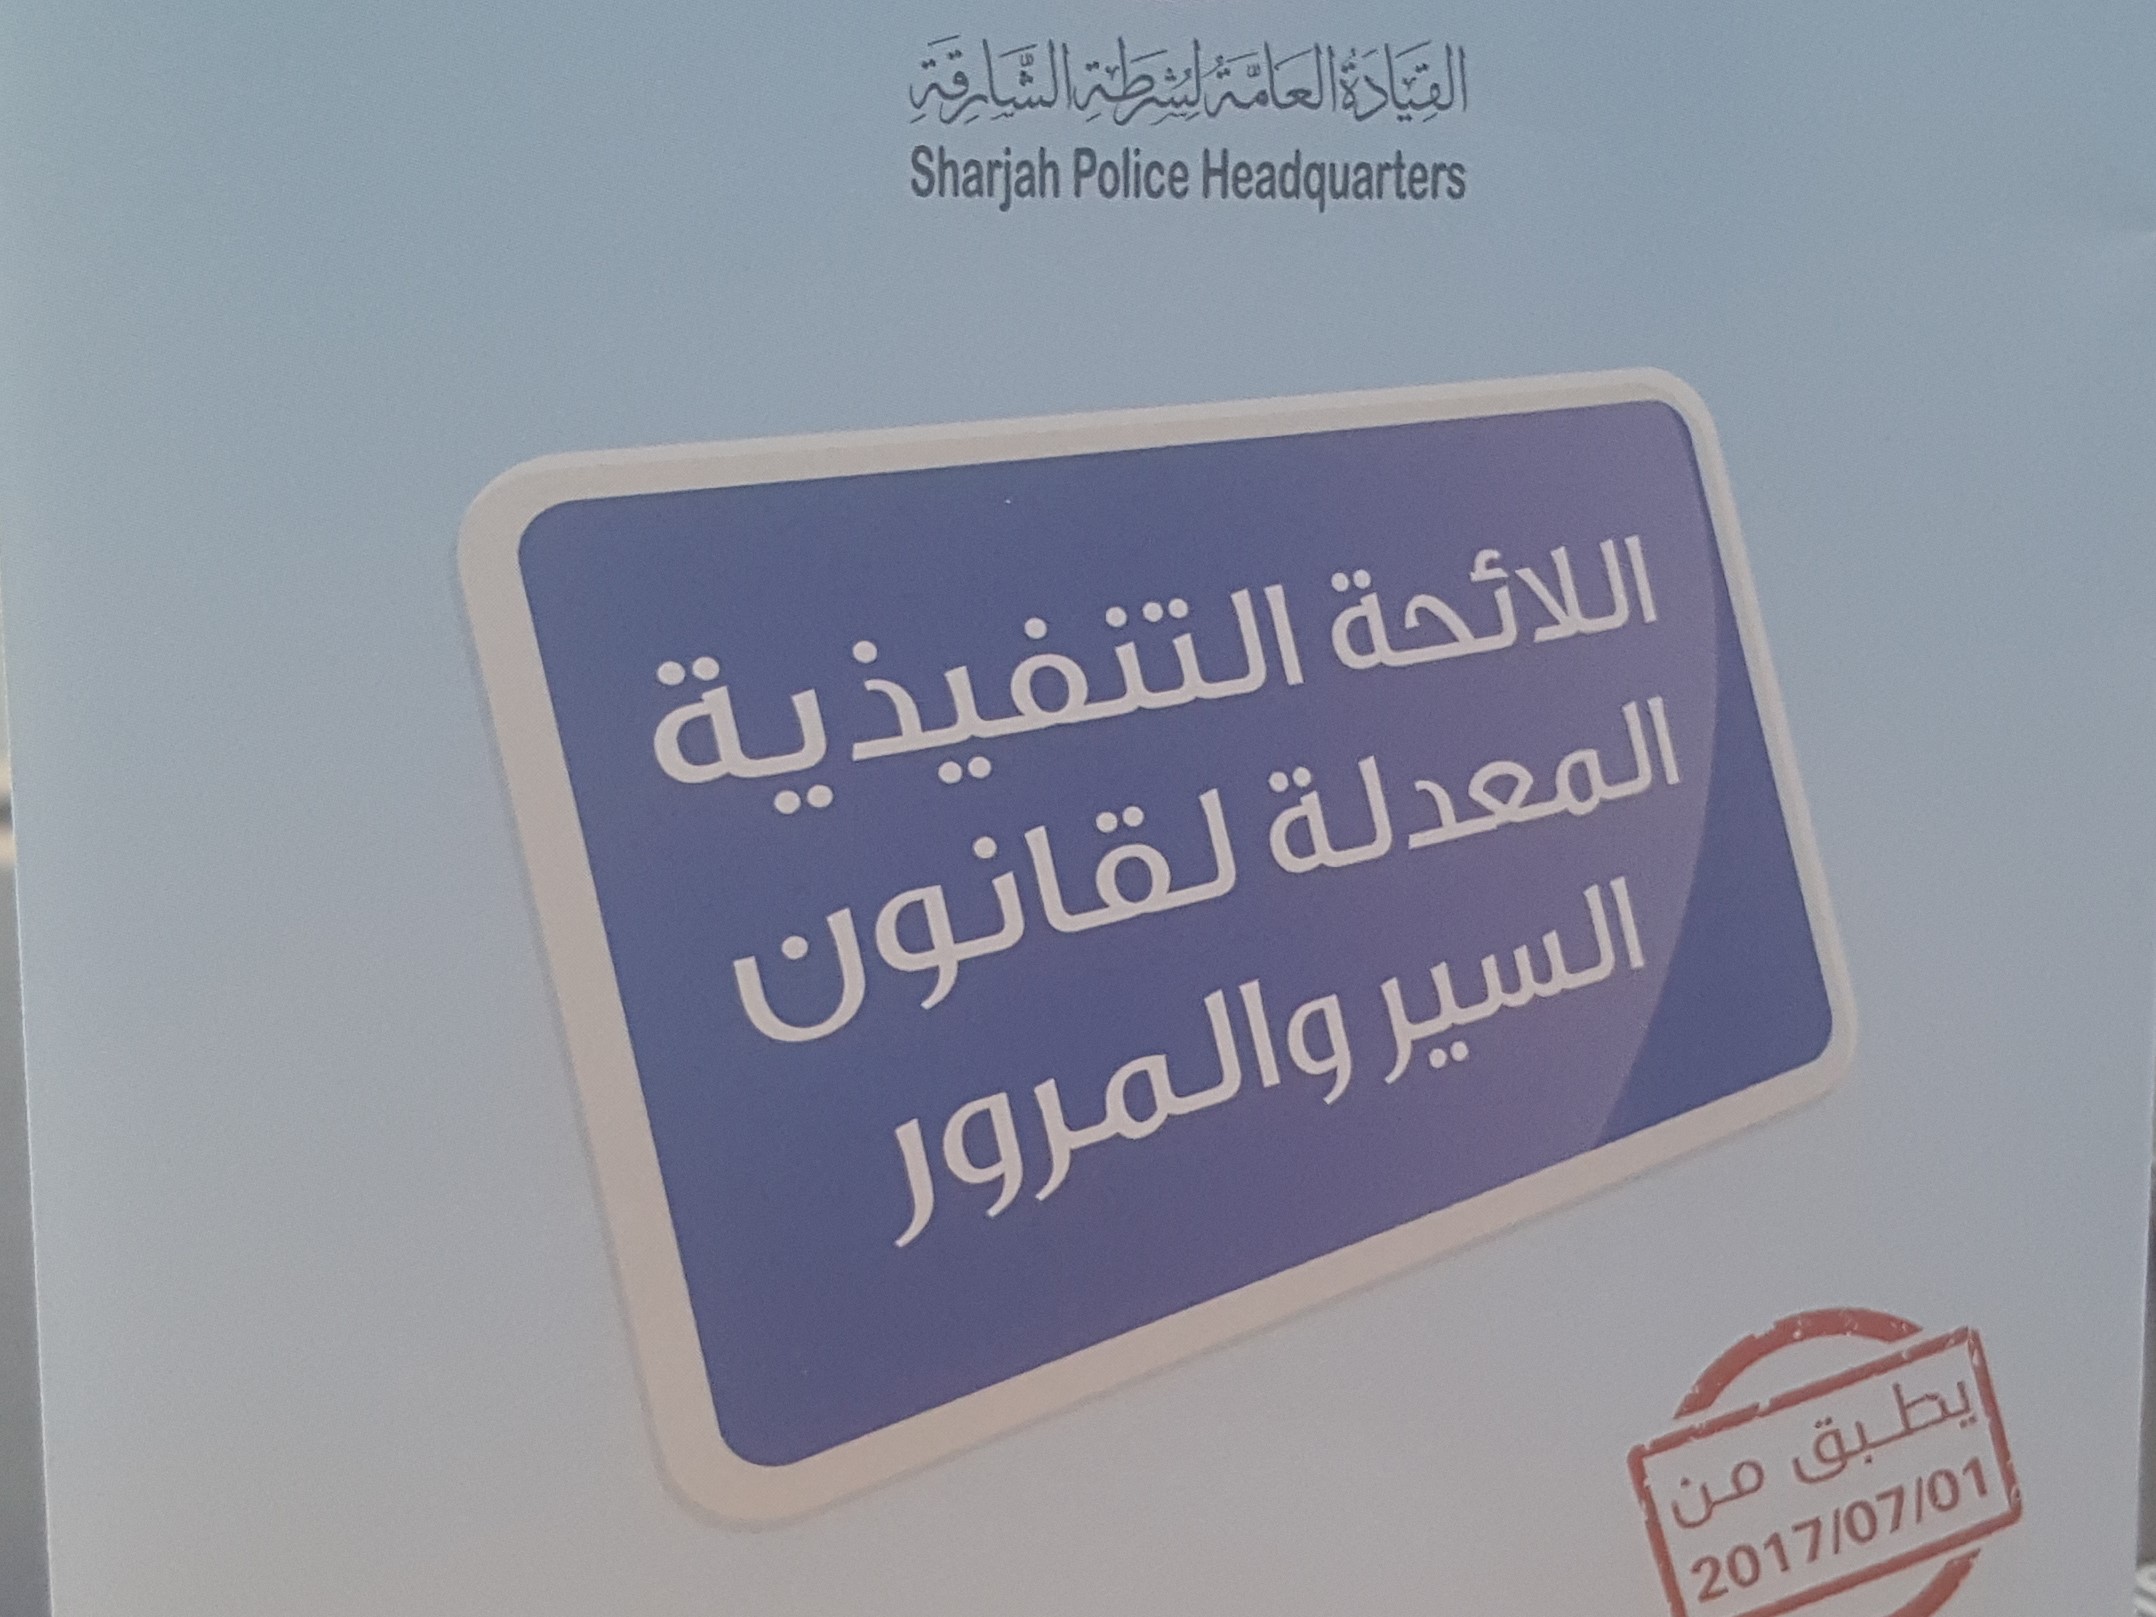 اللائحة التنفيذية المعدلة لقانون السير و المرور في الإمارات العربية المتحدة